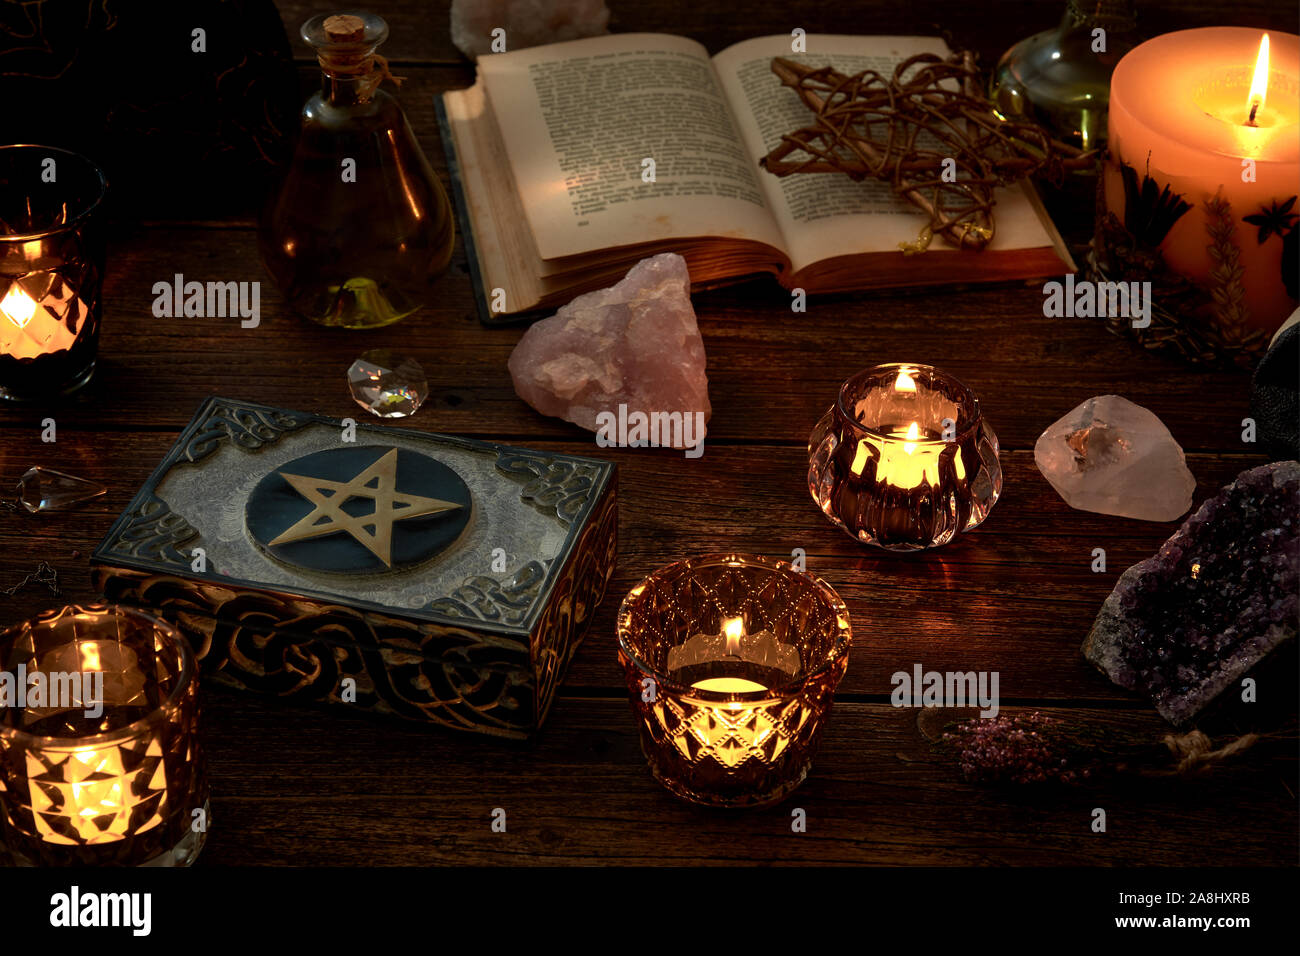 La vie mystique ou ésotérique encore avec une boîte et quelques bougies allumées, un pentagramme à côté d'un livre ouvert. Pendule et de pierres sur l'onglet en bois ancien Banque D'Images